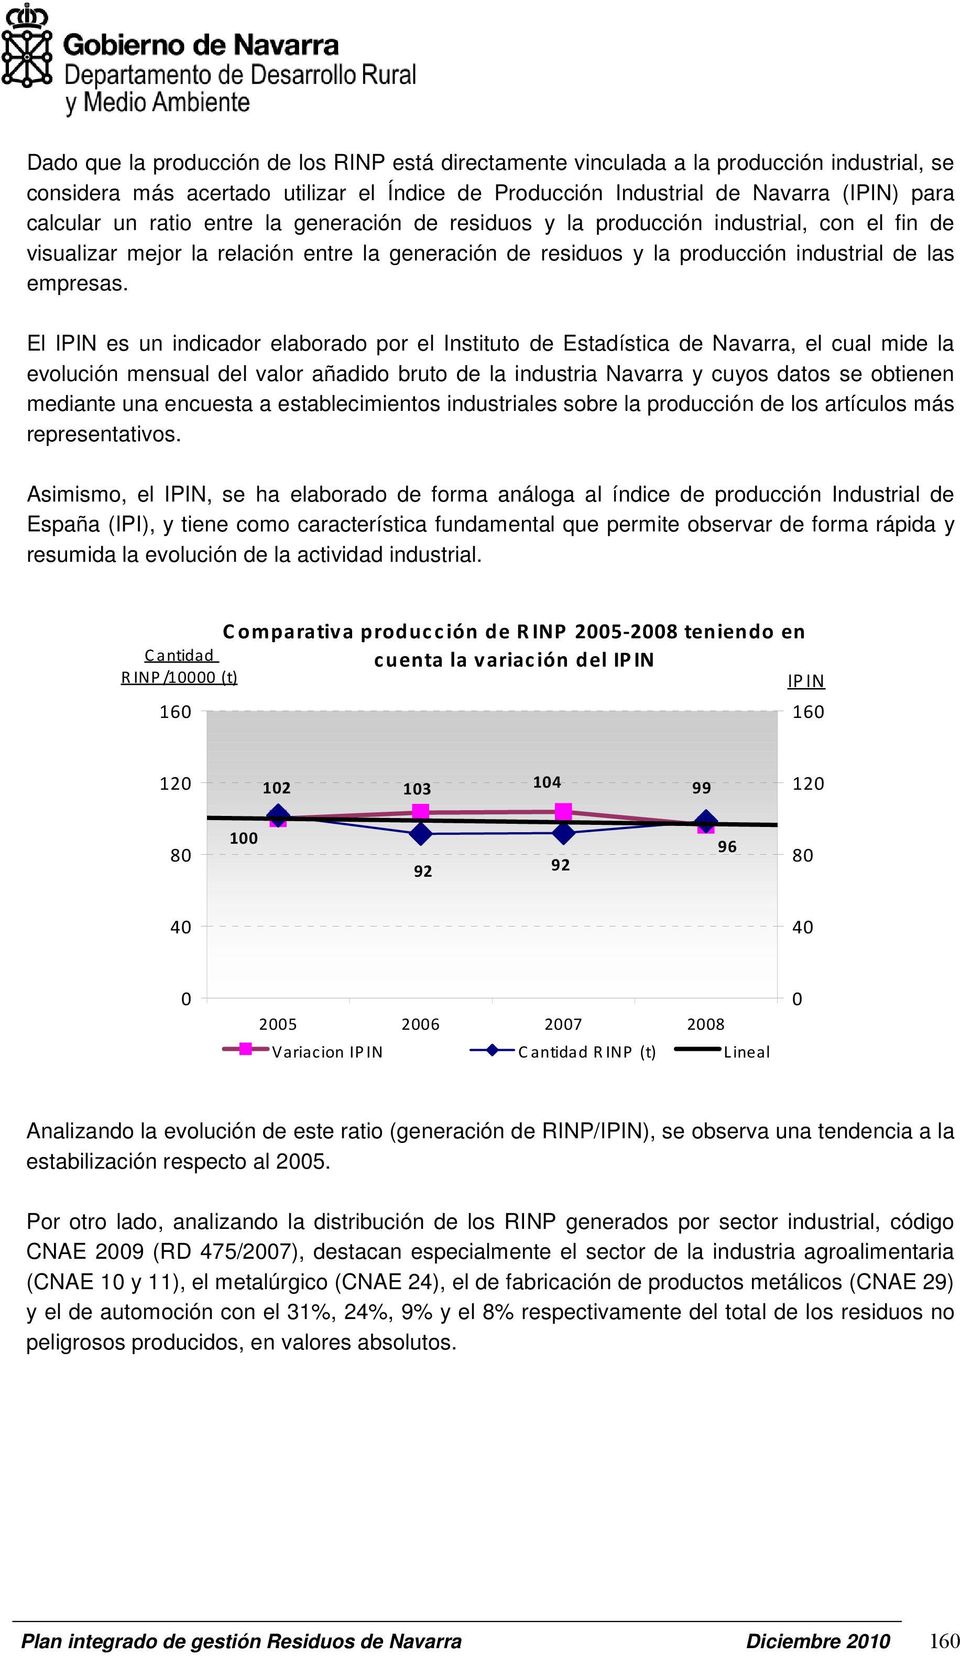 El IPIN es un indicador elaborado por el Instituto de Estadística de Navarra, el cual mide la evolución mensual del valor añadido bruto de la industria Navarra y cuyos datos se obtienen mediante una